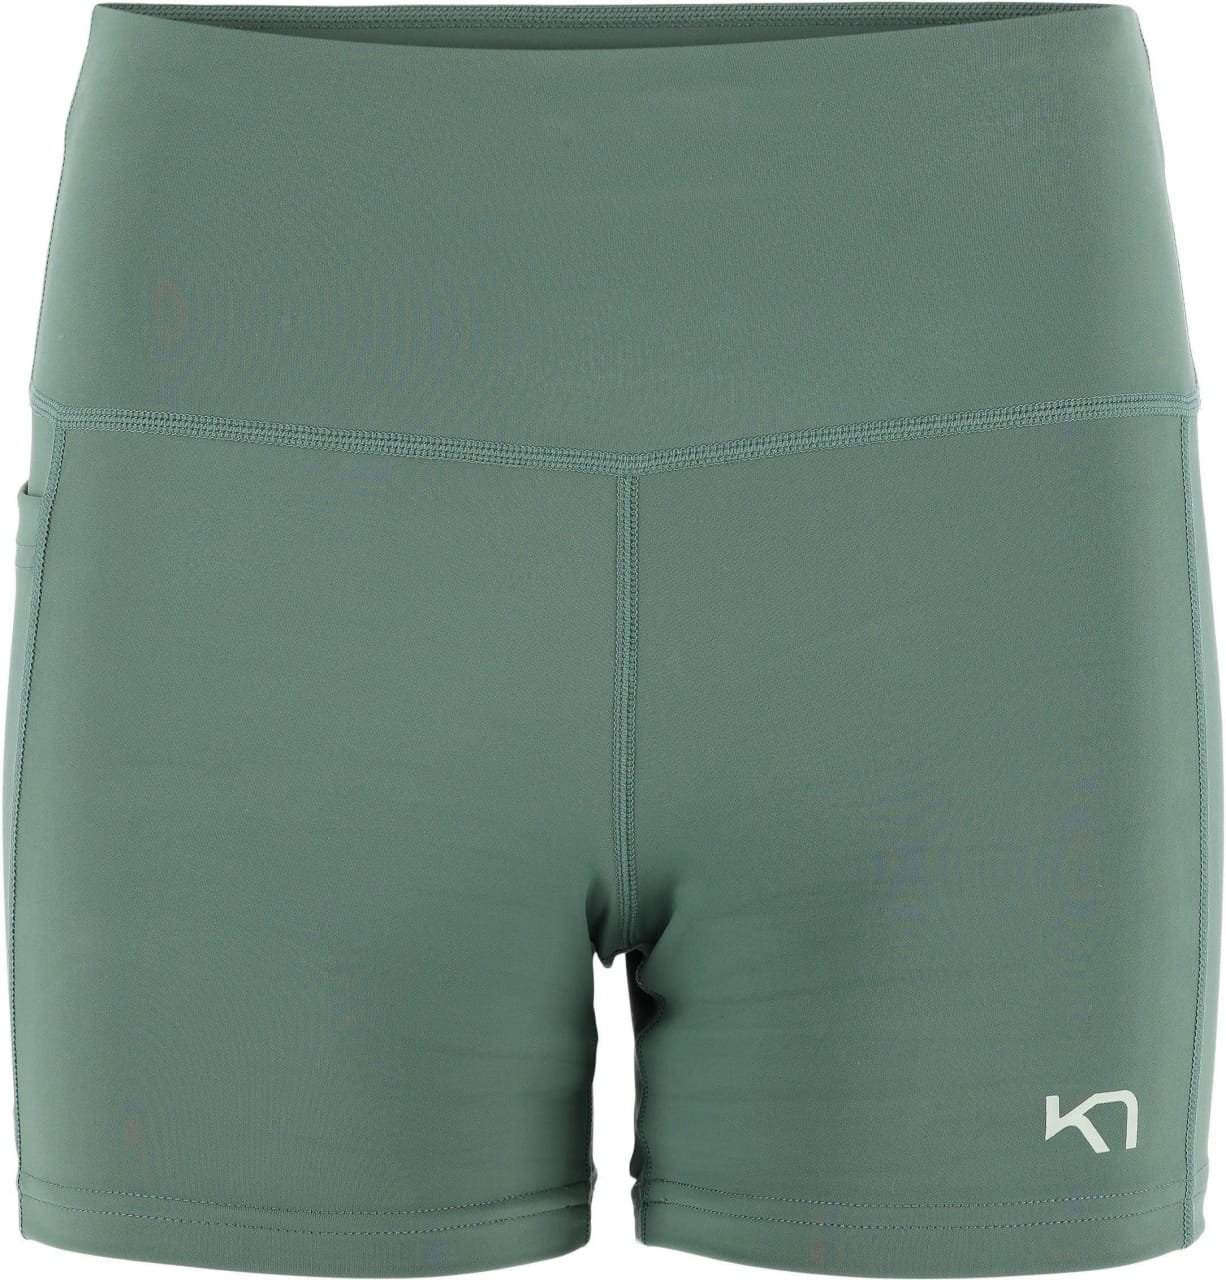 Pantaloni scurți sport pentru femei Kari Traa Vilde Shorts 3IN